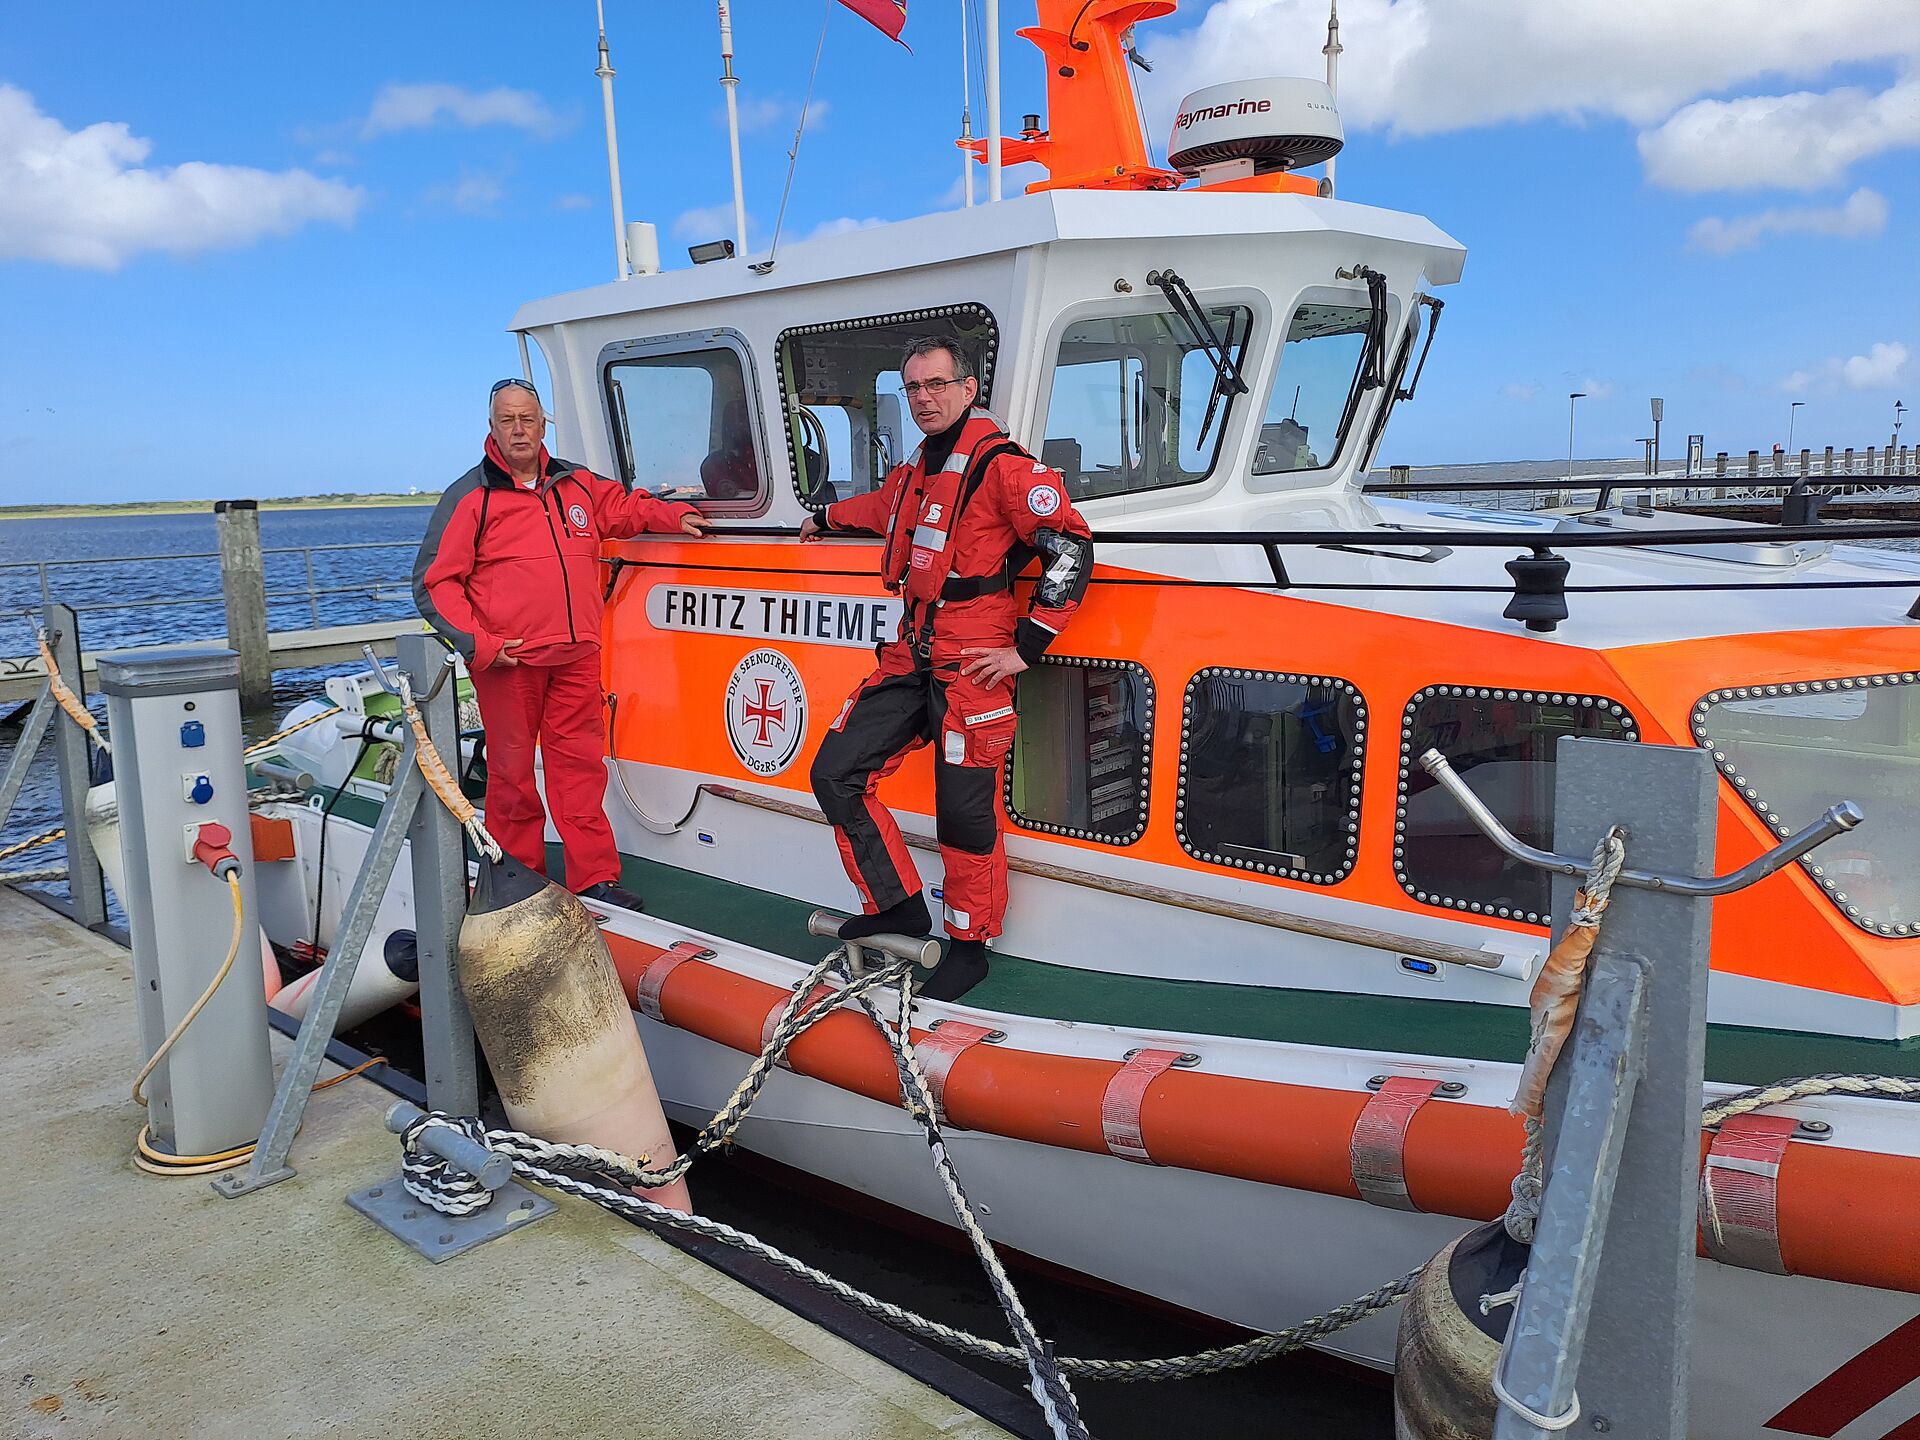 Vormann Bernd Abels (r.) und sein Vorgänger Roger Riehl in roter Dienstkleidung auf dem Seenotrettungsboot FRITZ THIEME.